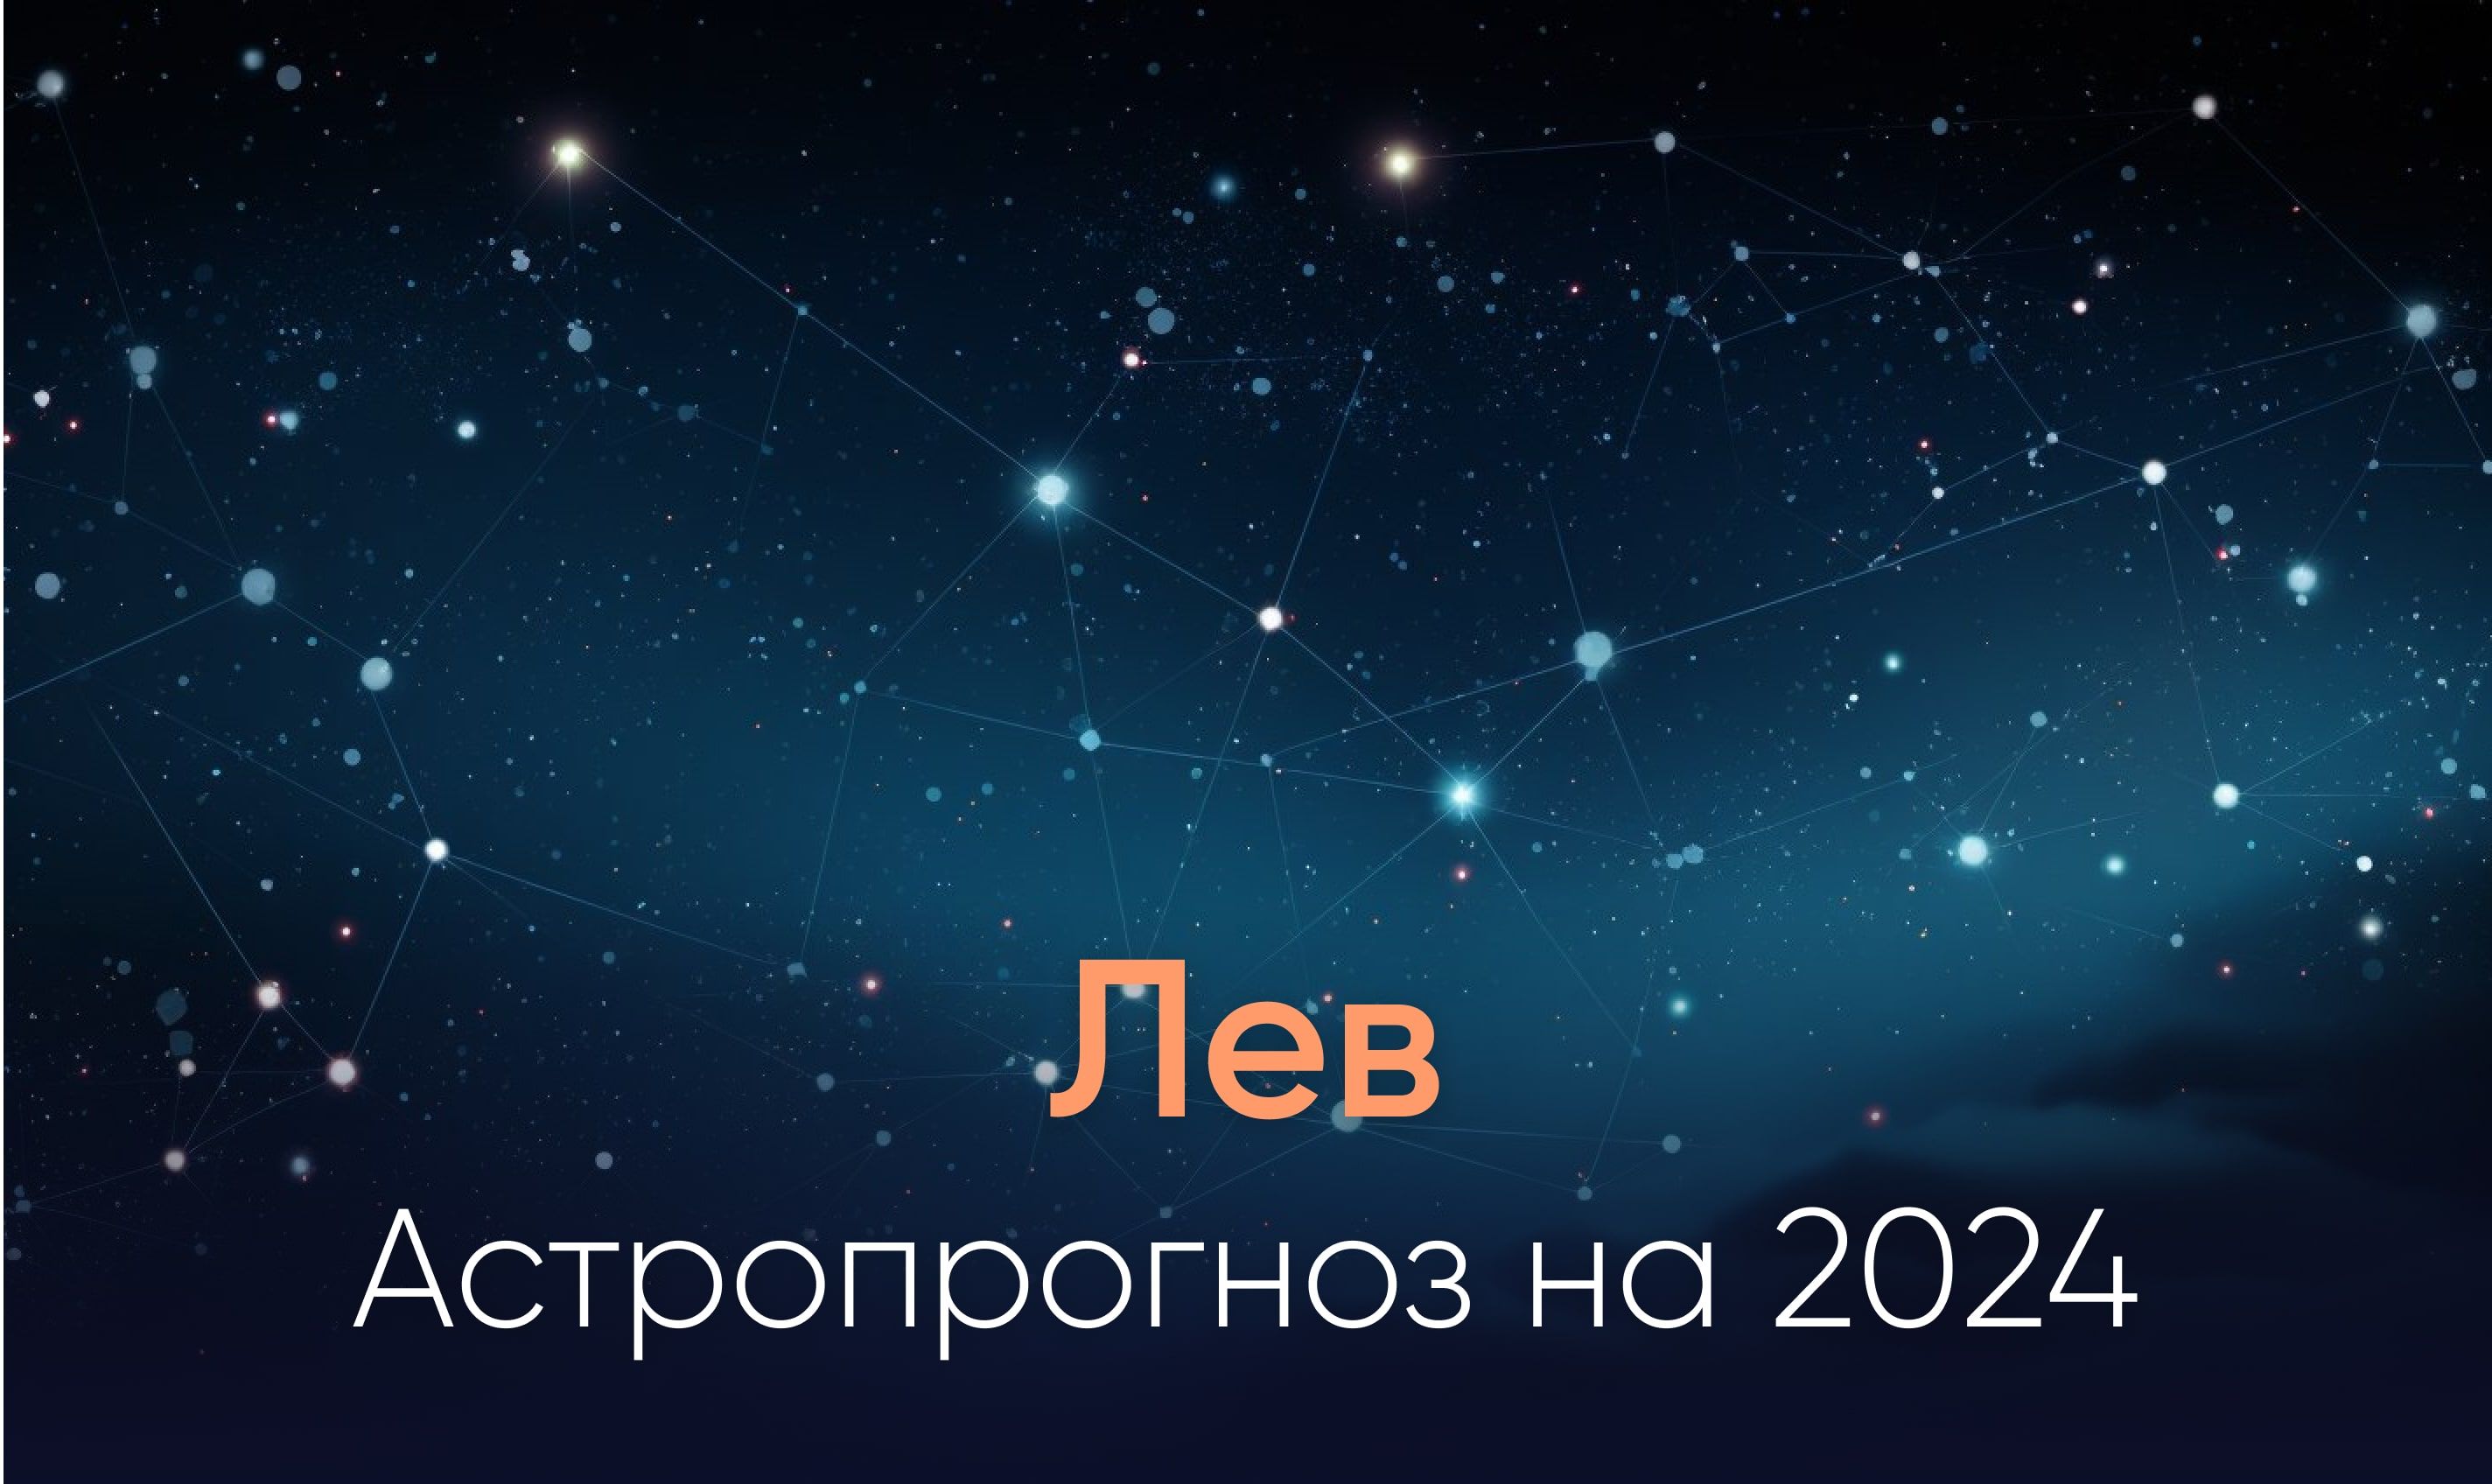 Астропрогноз на 2024 для знака Лев